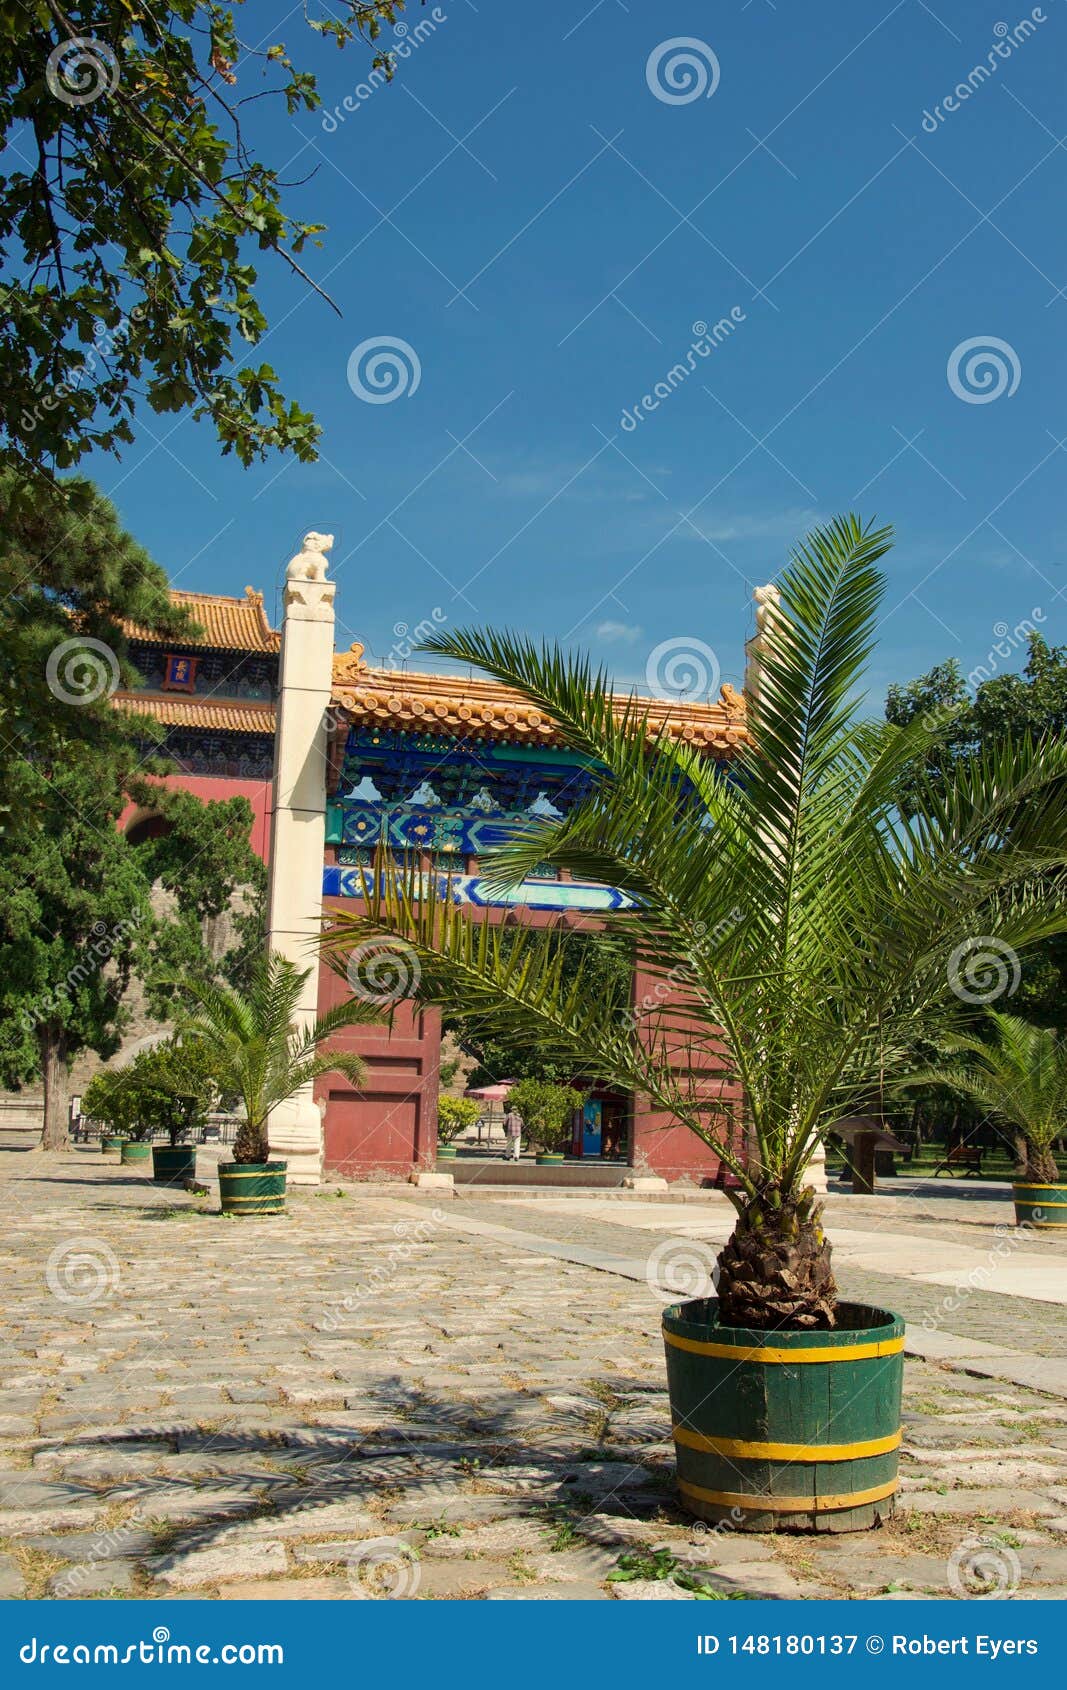 Drzewko palmowe w garnku w Chińskim podwórzu - jaskrawy światło słoneczne, cień na podłodze. Piękny jaskrawy - zieleń opuszcza na drzewku palmowym w Chińskim podwórzu Pagodowa świątynia w tle, cień krzak na podłodze, genialny światło słoneczne i niebieskie niebo nad,